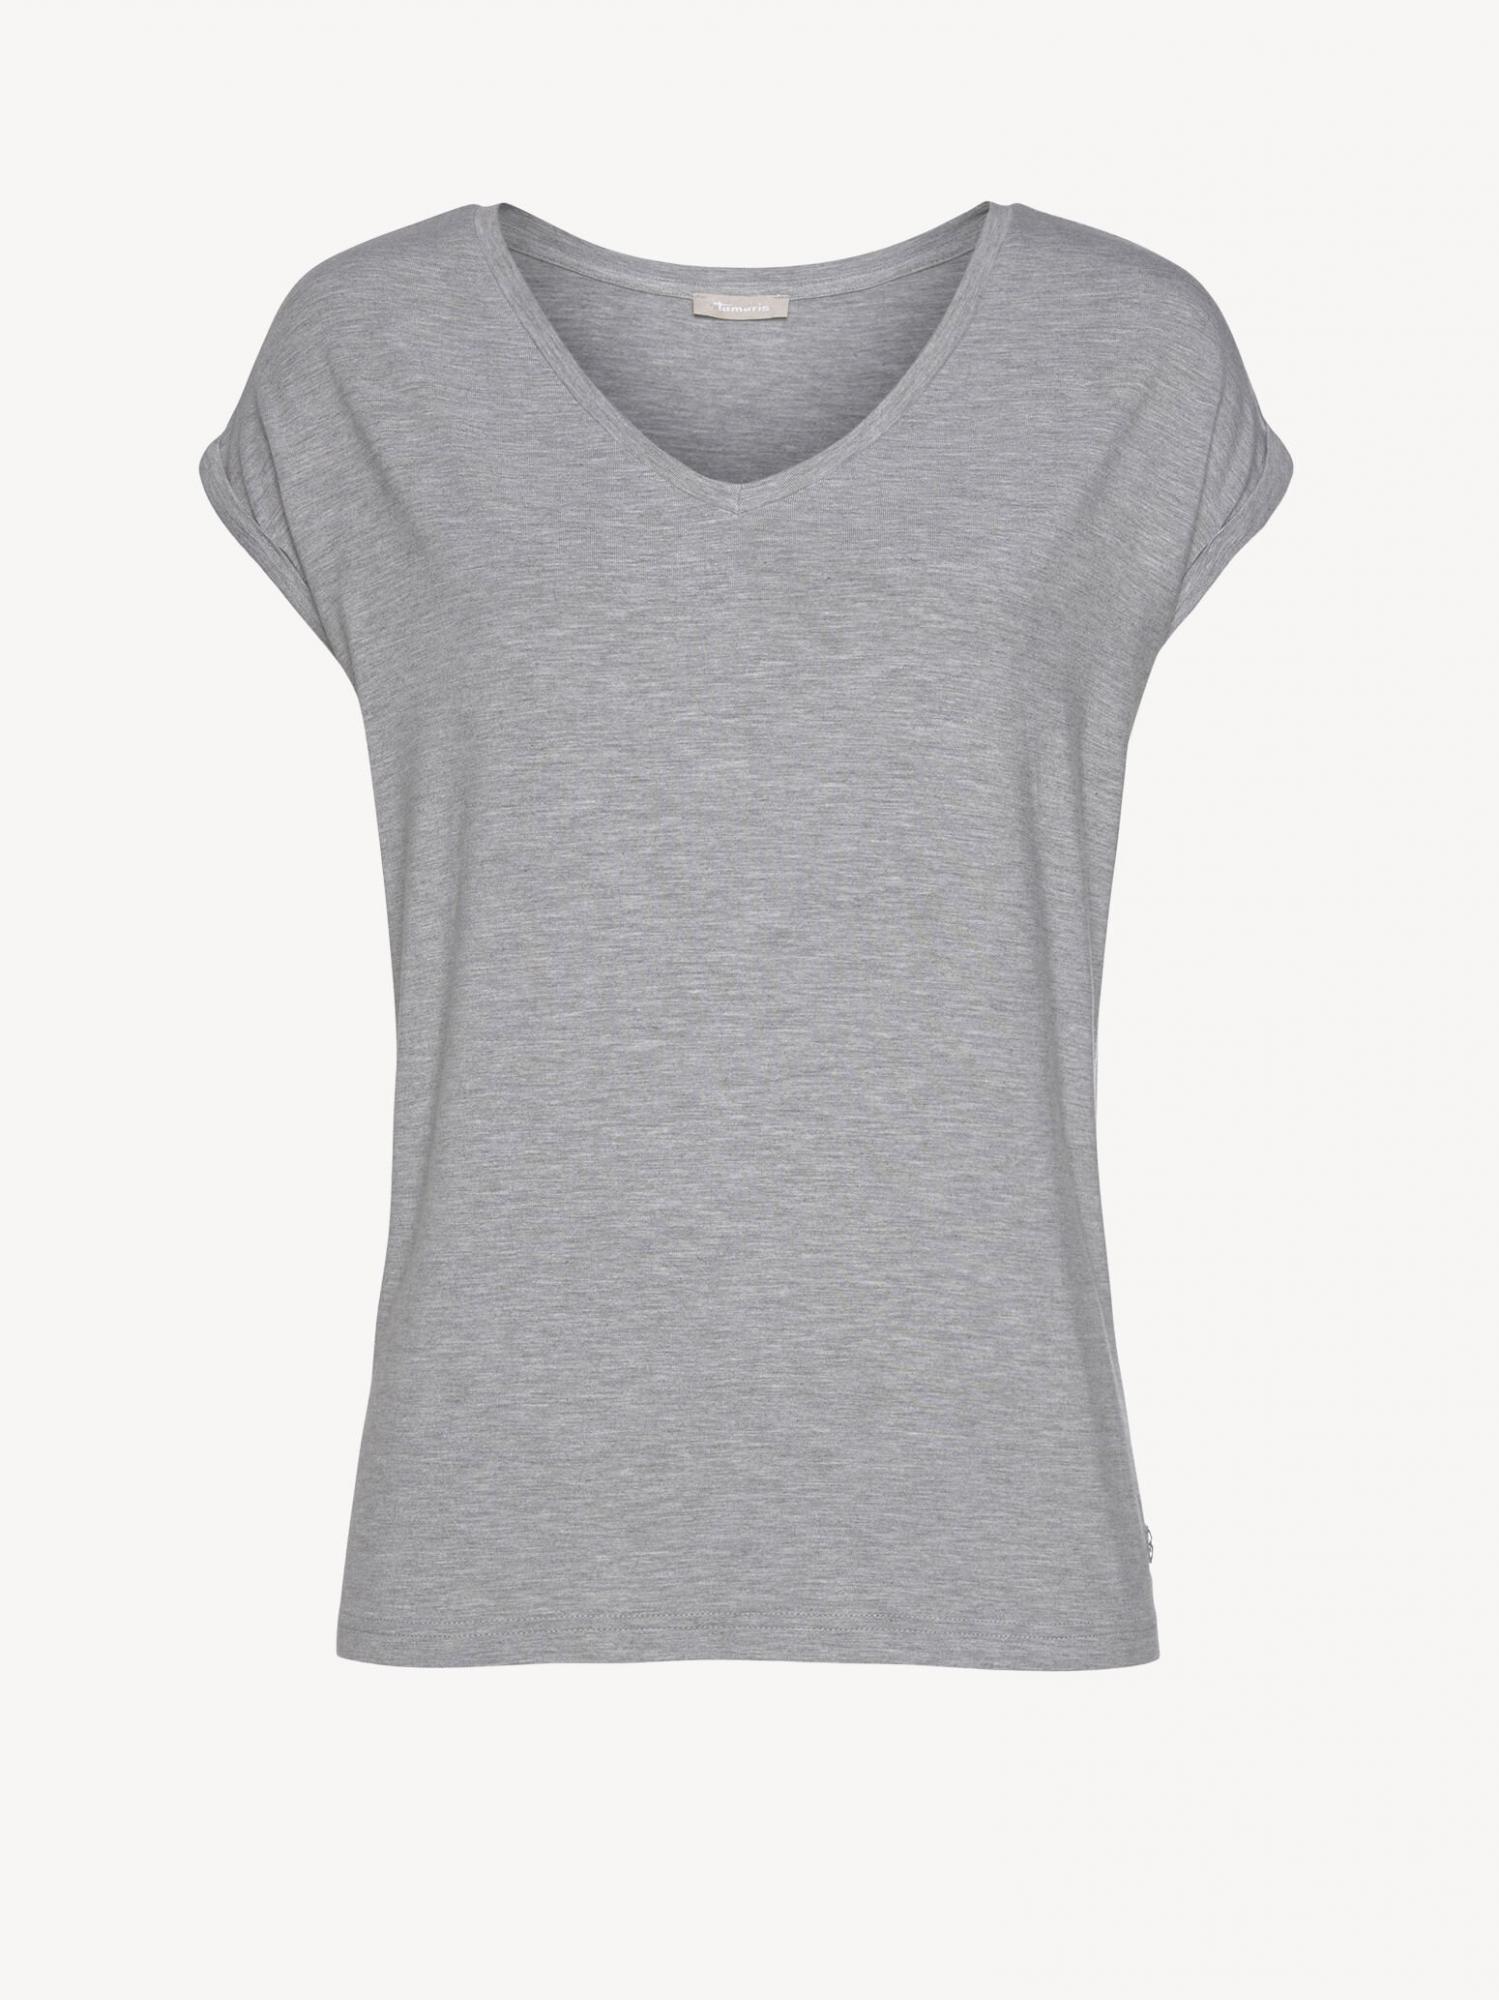 Damen T-Shirt Grey Melange | Tamaris Blusen & Shirts